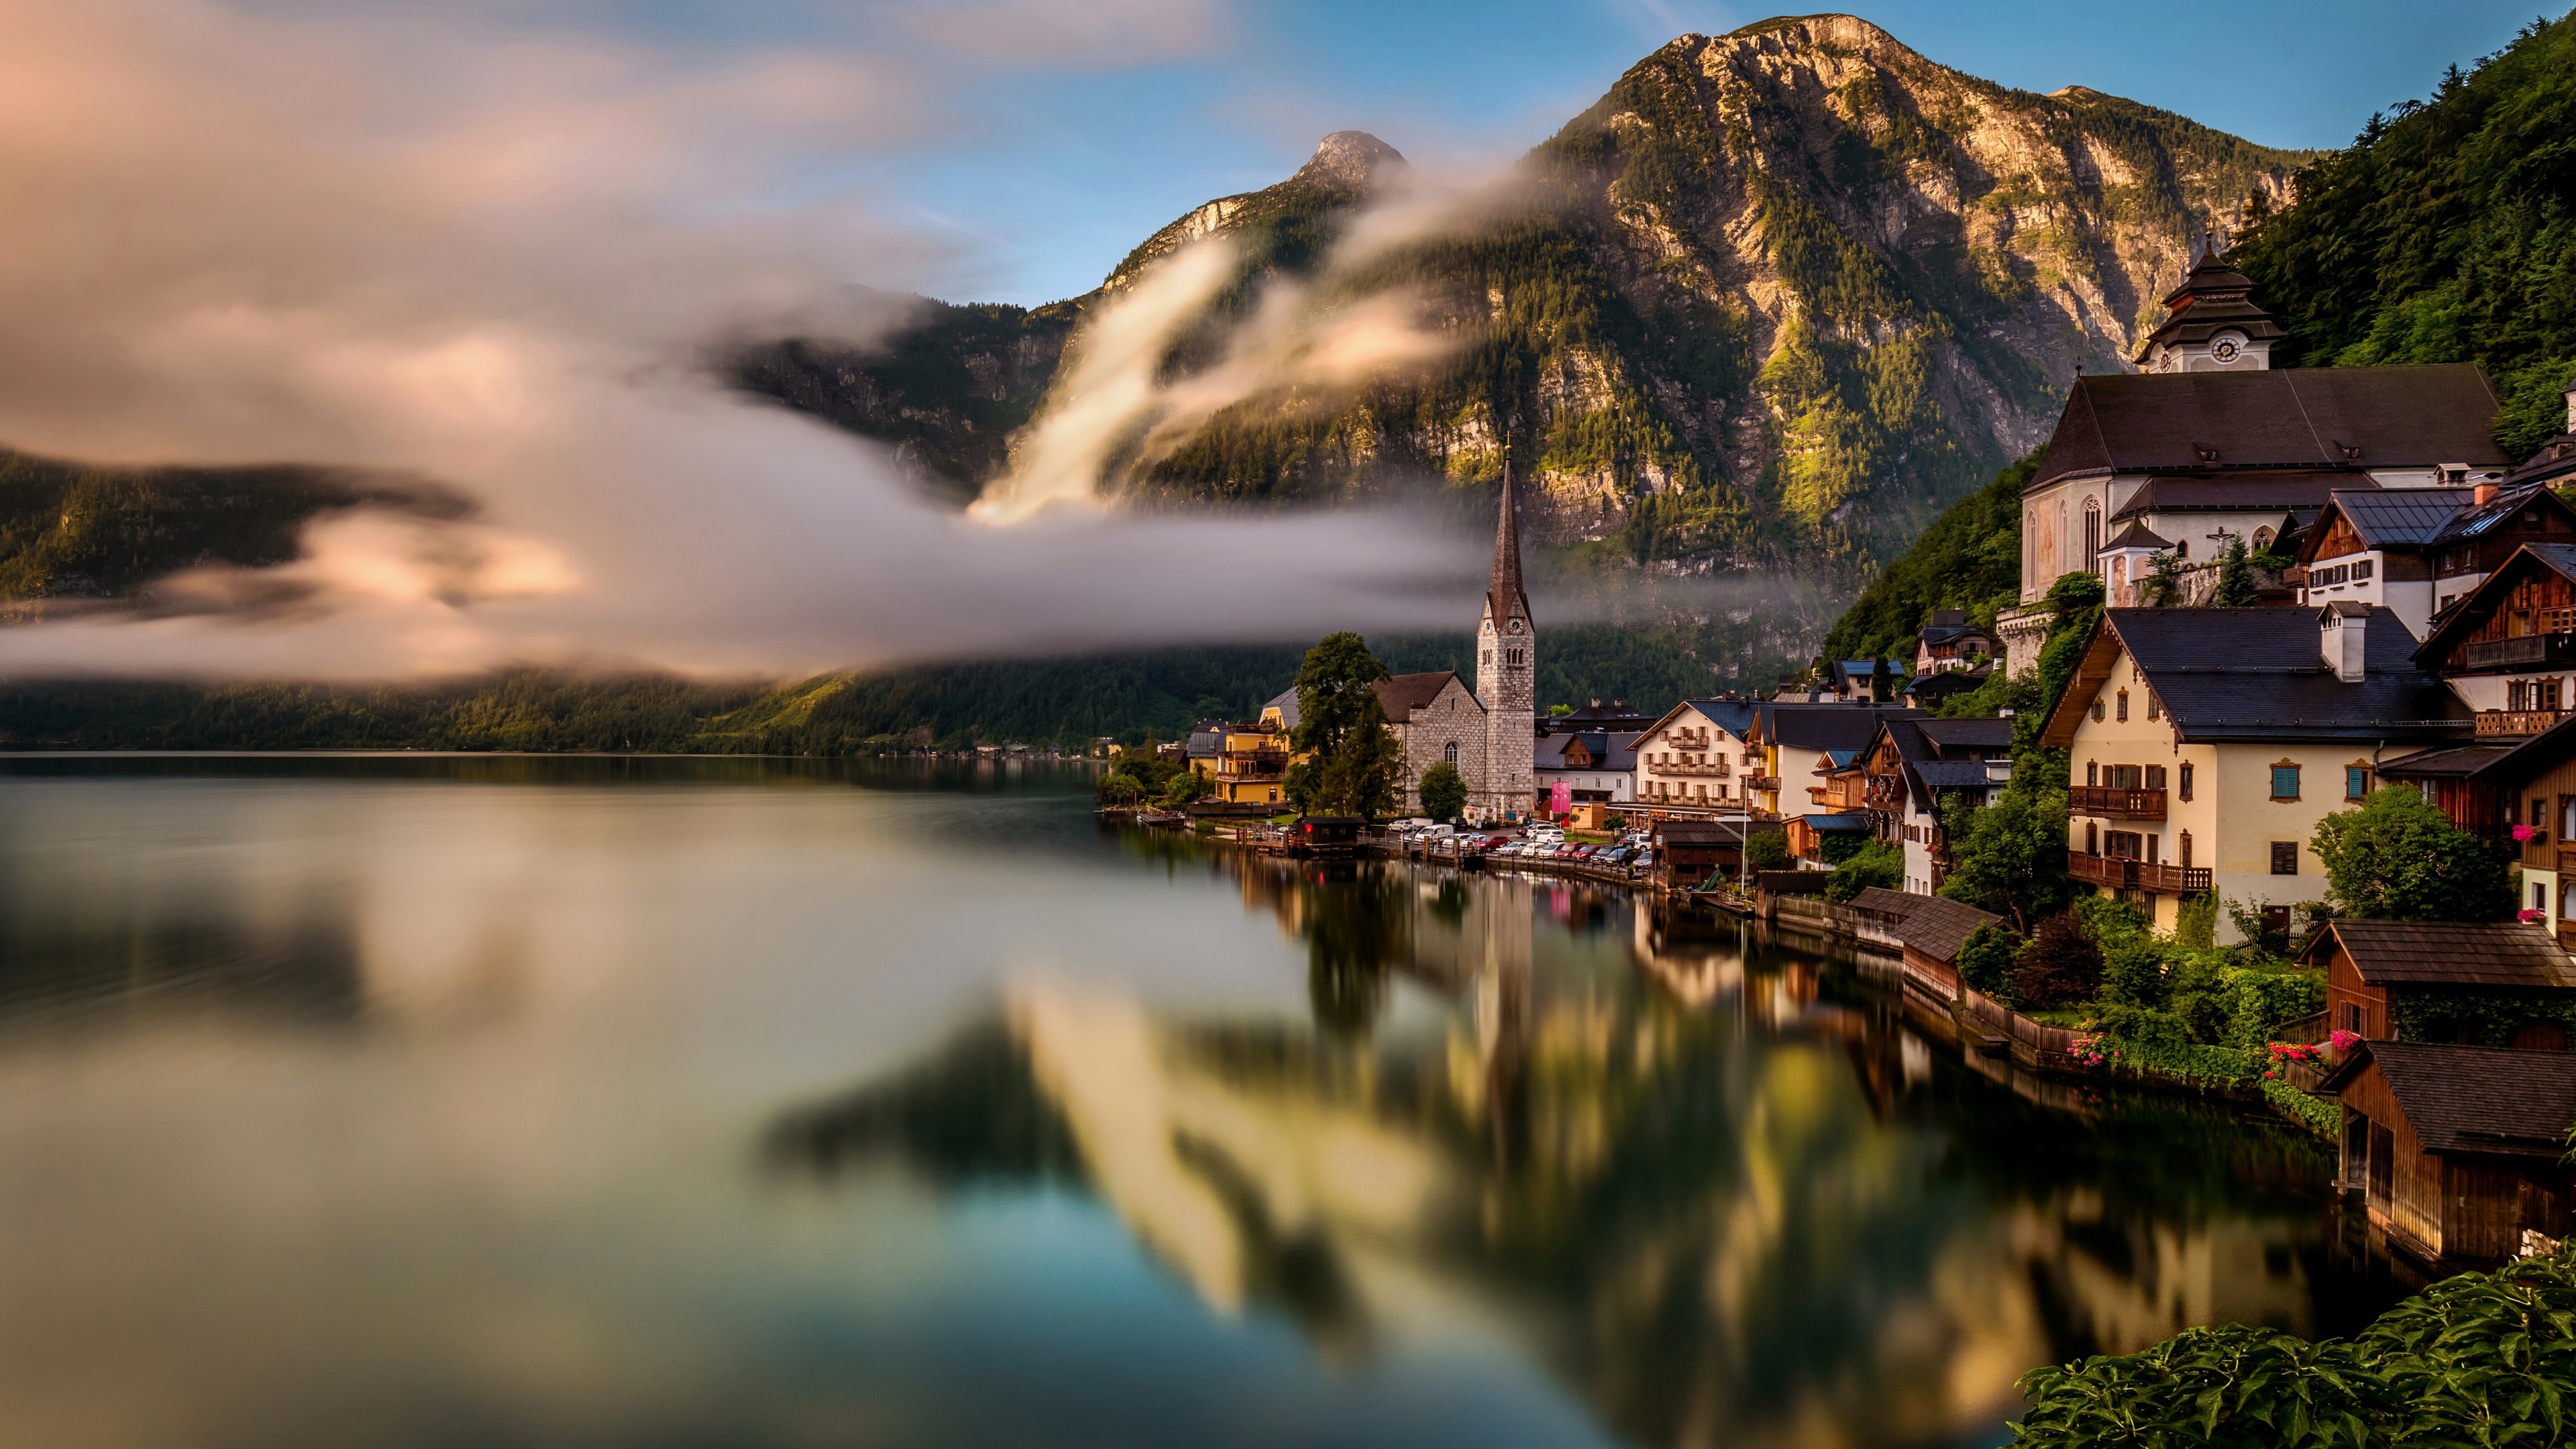 Travel-to-Hallstatt-Austria-lake-water-reflection-houses-Alps-fog_3840x2160.jpg